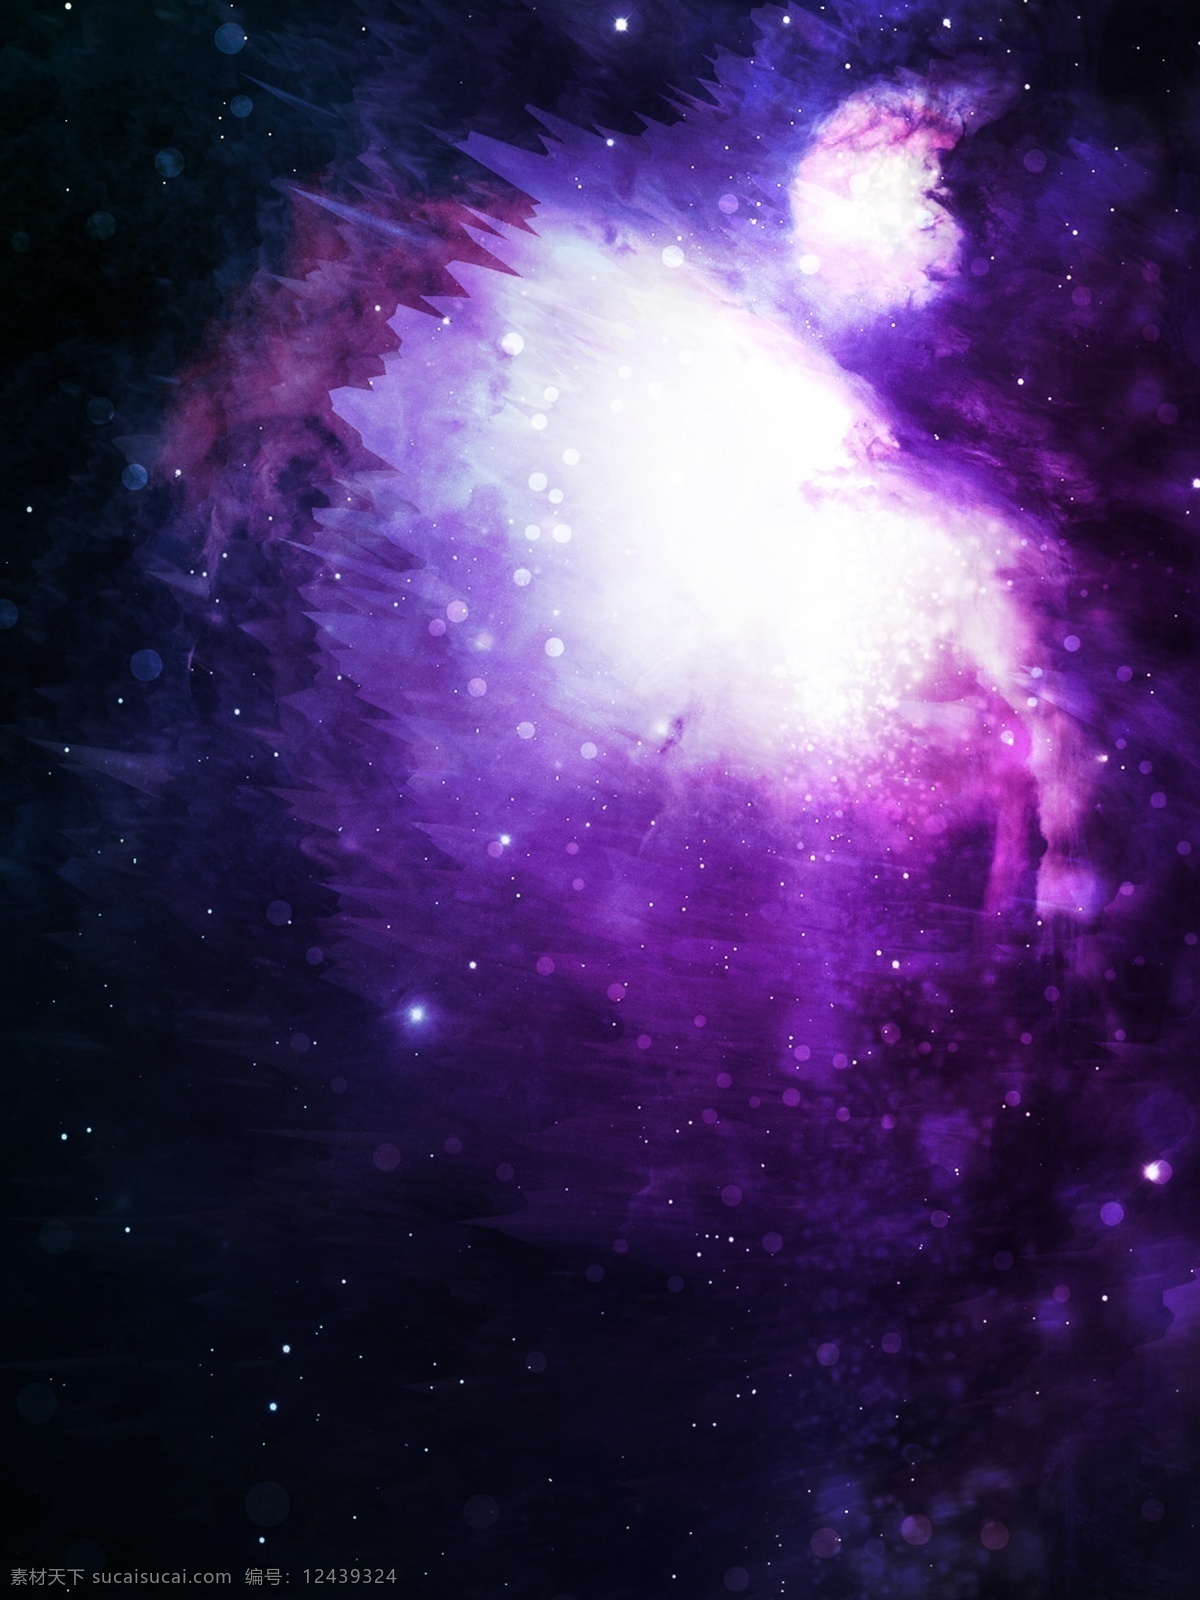 科技 感 紫色 星空 背景 科技感 紫色背景 电竞背景 科幻 电影海报背景 宇宙 太空 银河 黑暗 暗色系 炫酷背景 双11背景 大数据界面 广告背景